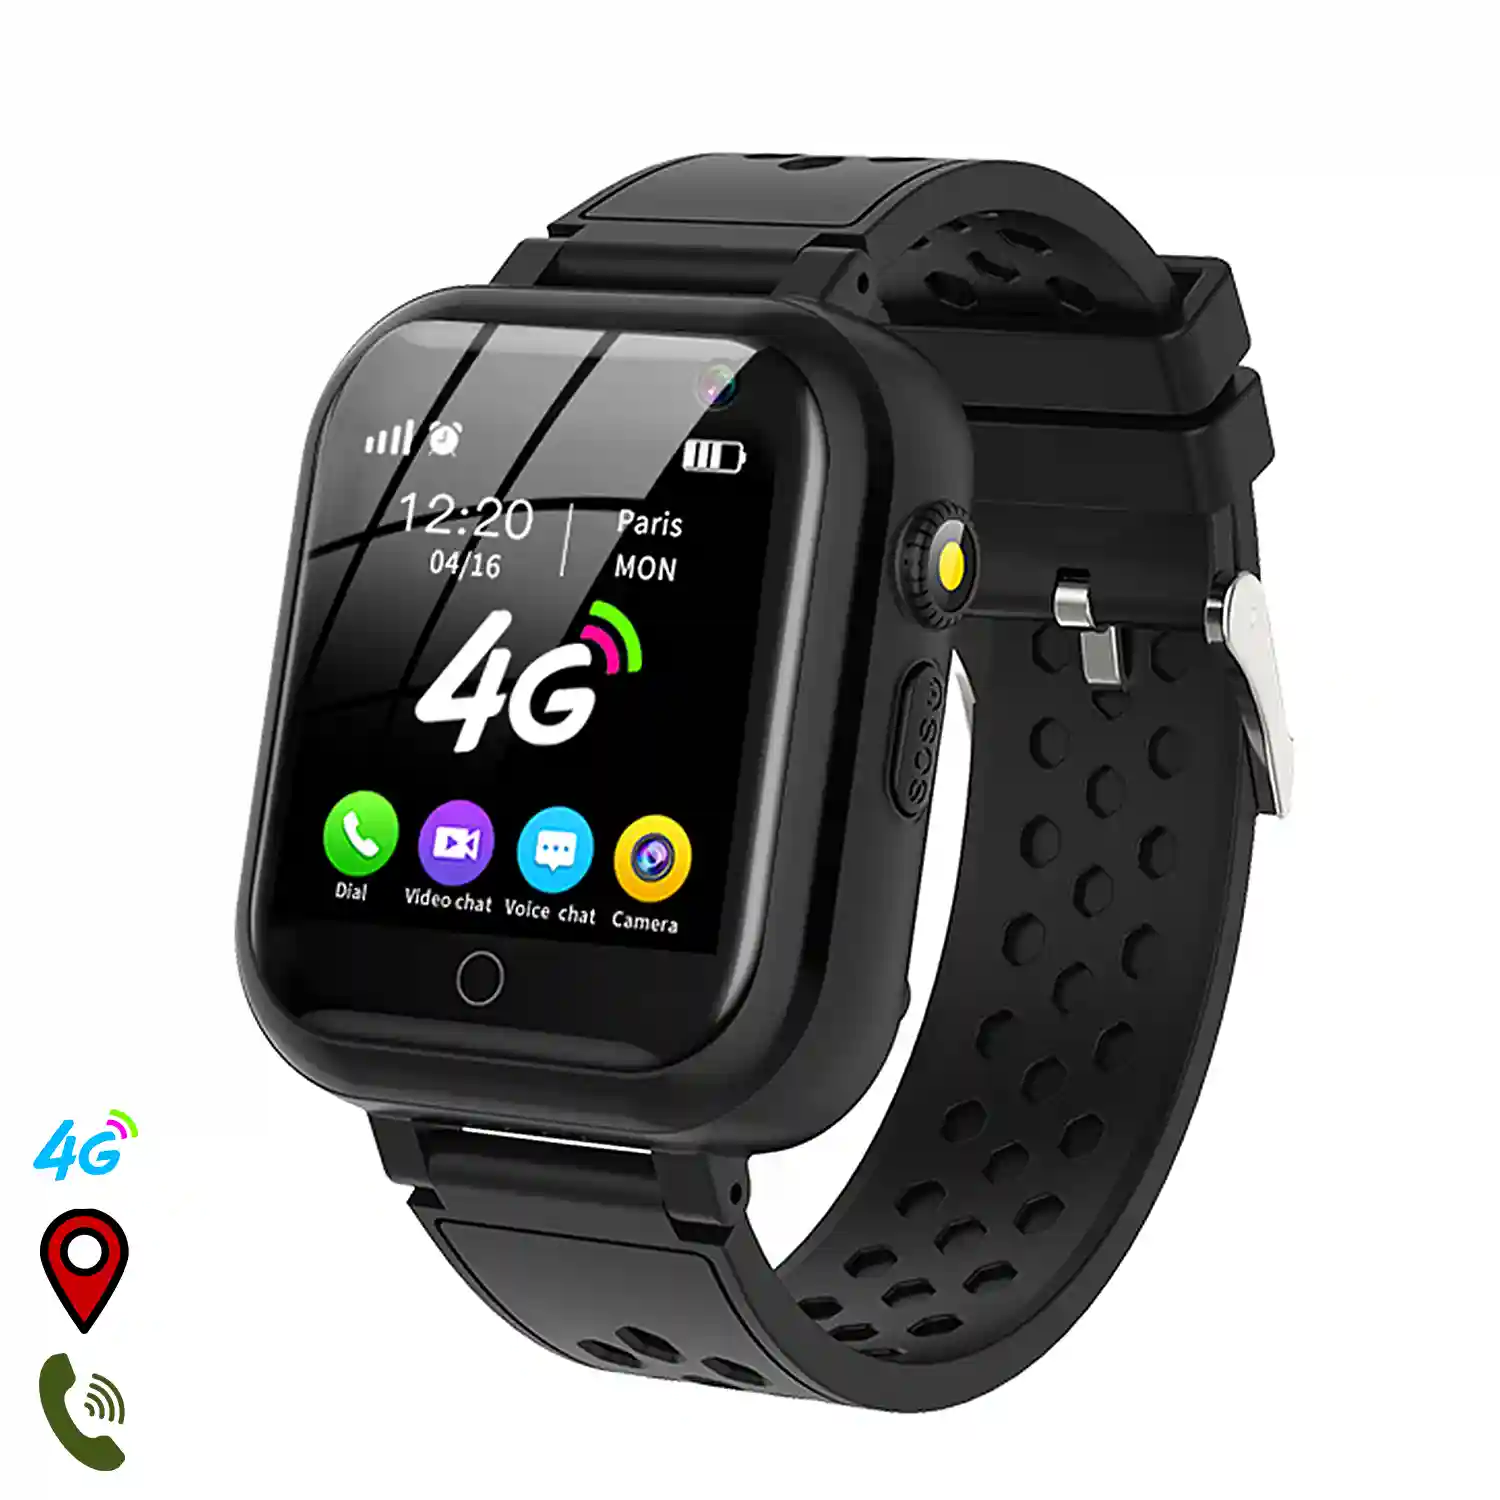 Desalentar Gratificante mordedura Smartwatch T16 4G localizador GPS,Wifi y LBS. Videollamada, micro chat,  botón SOS.